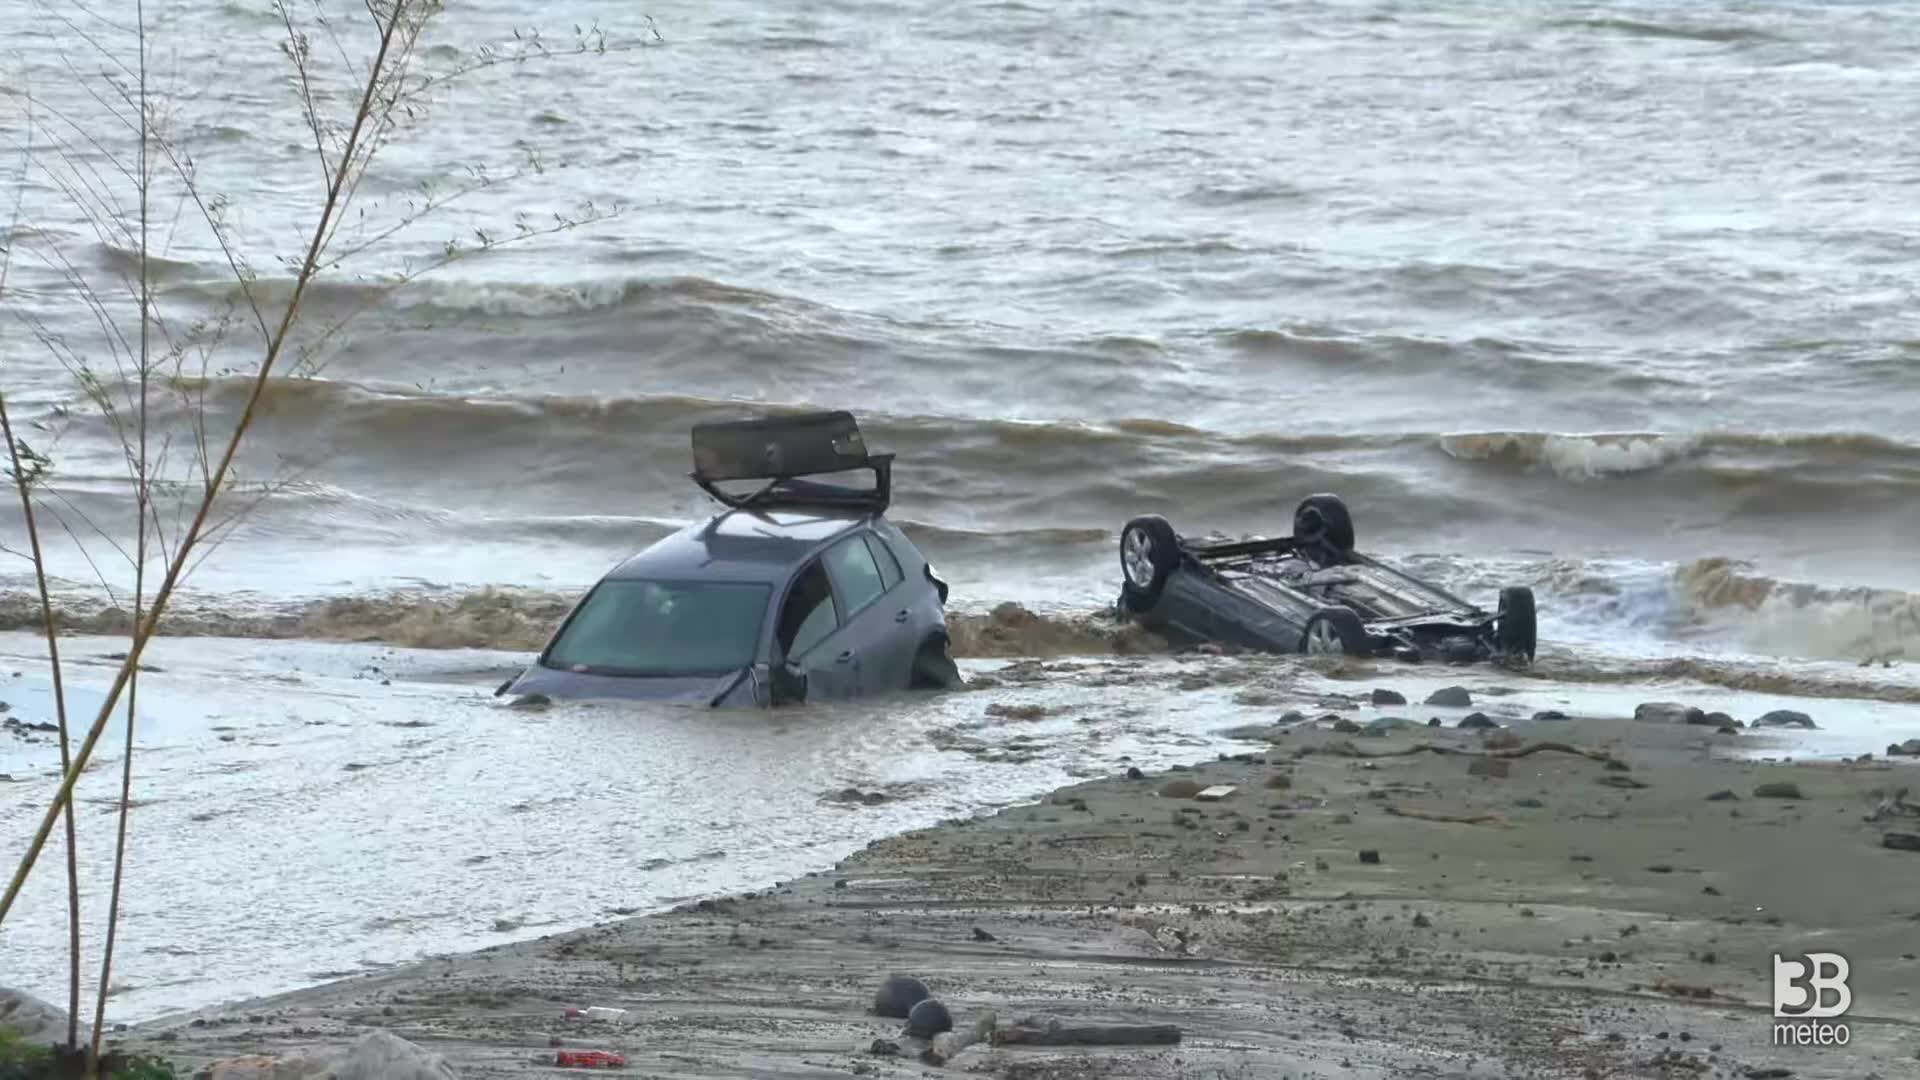 Cronaca Meteo Campania: disastrosa frana a Ischia, auto trascinate in mare, il video